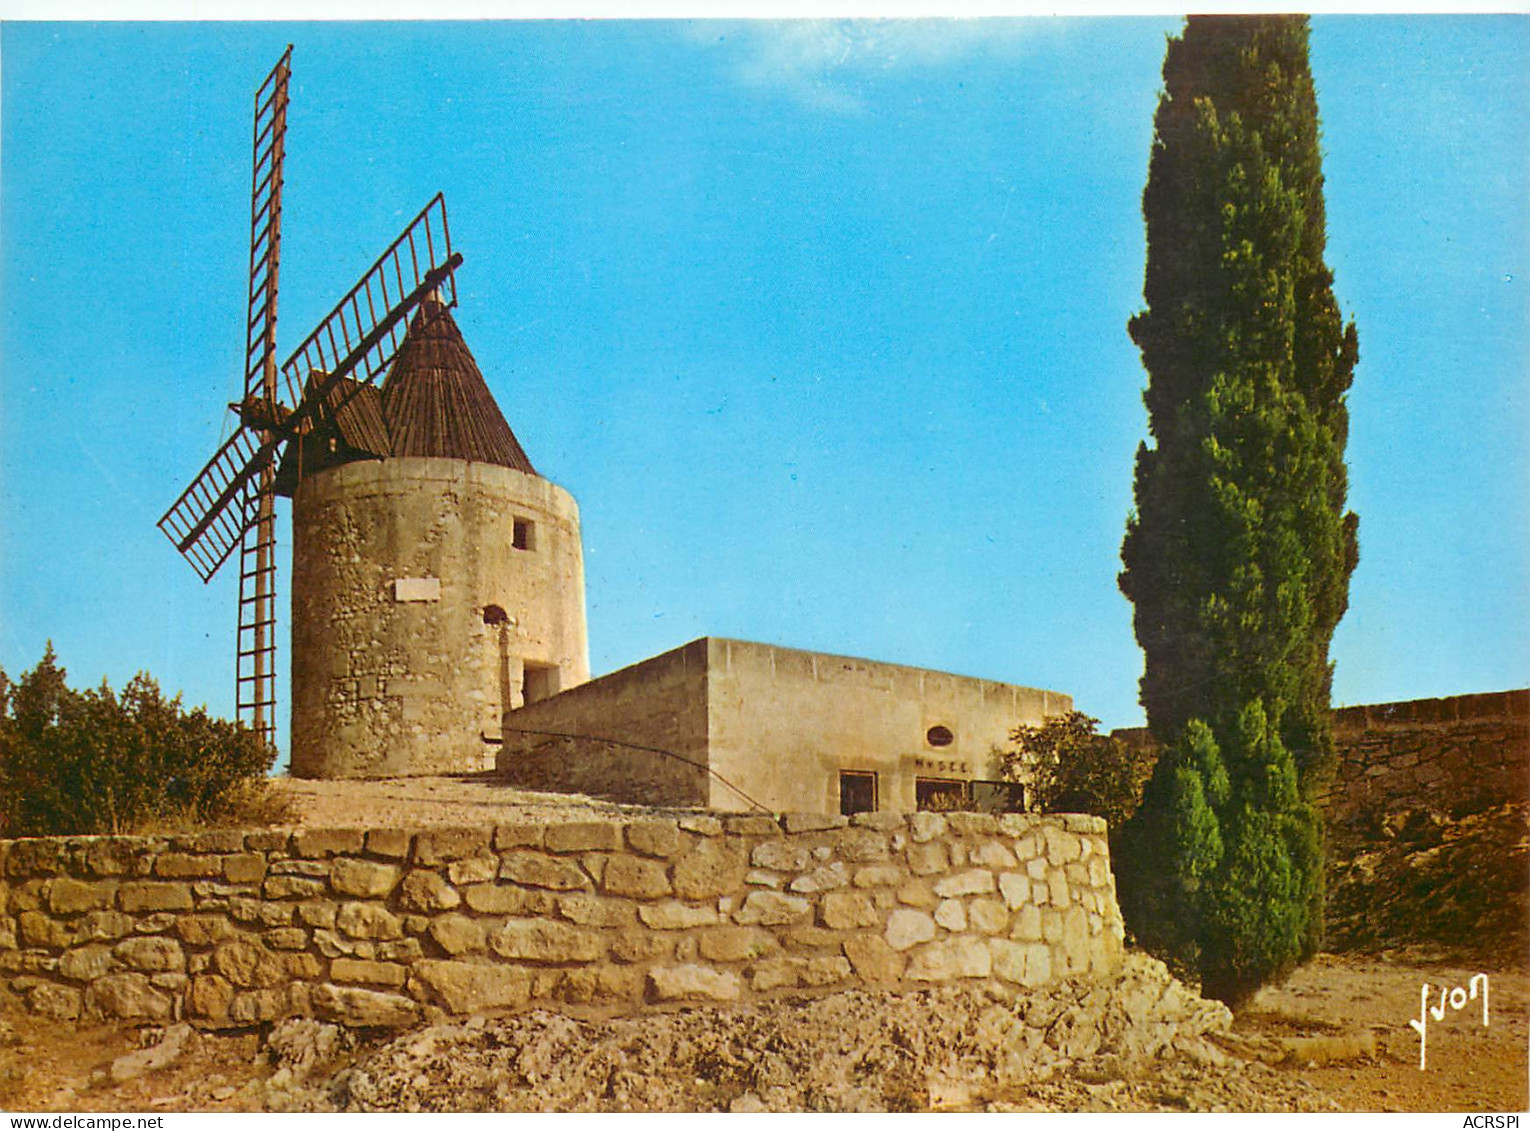 FONTVIEILLE Le Moulin D Alphonse Daudet D Oou Le Grand Conteur A Date Les Lettre De Mon Mouli14(scan Recto-verso) ME2615 - Fontvieille